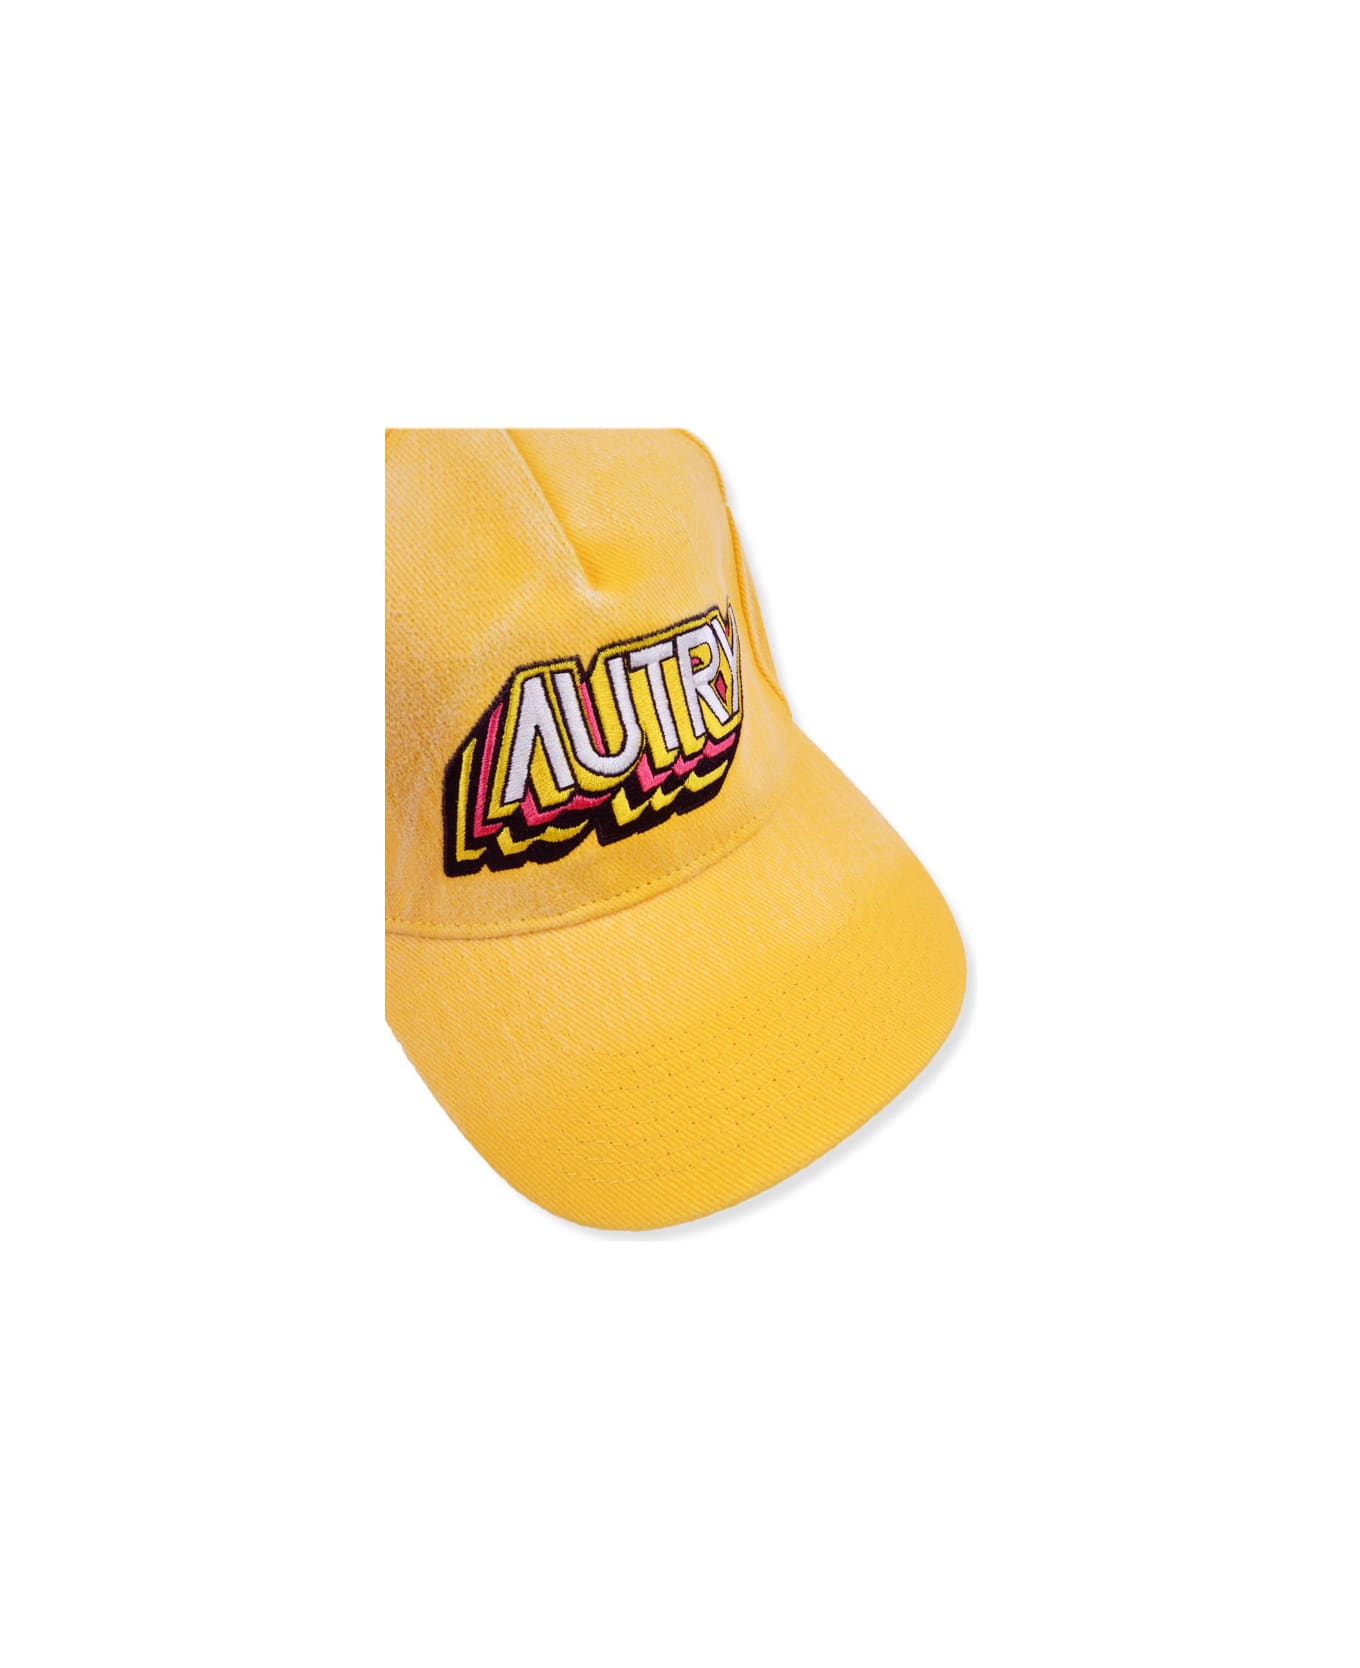 Autry Hat - Yellow